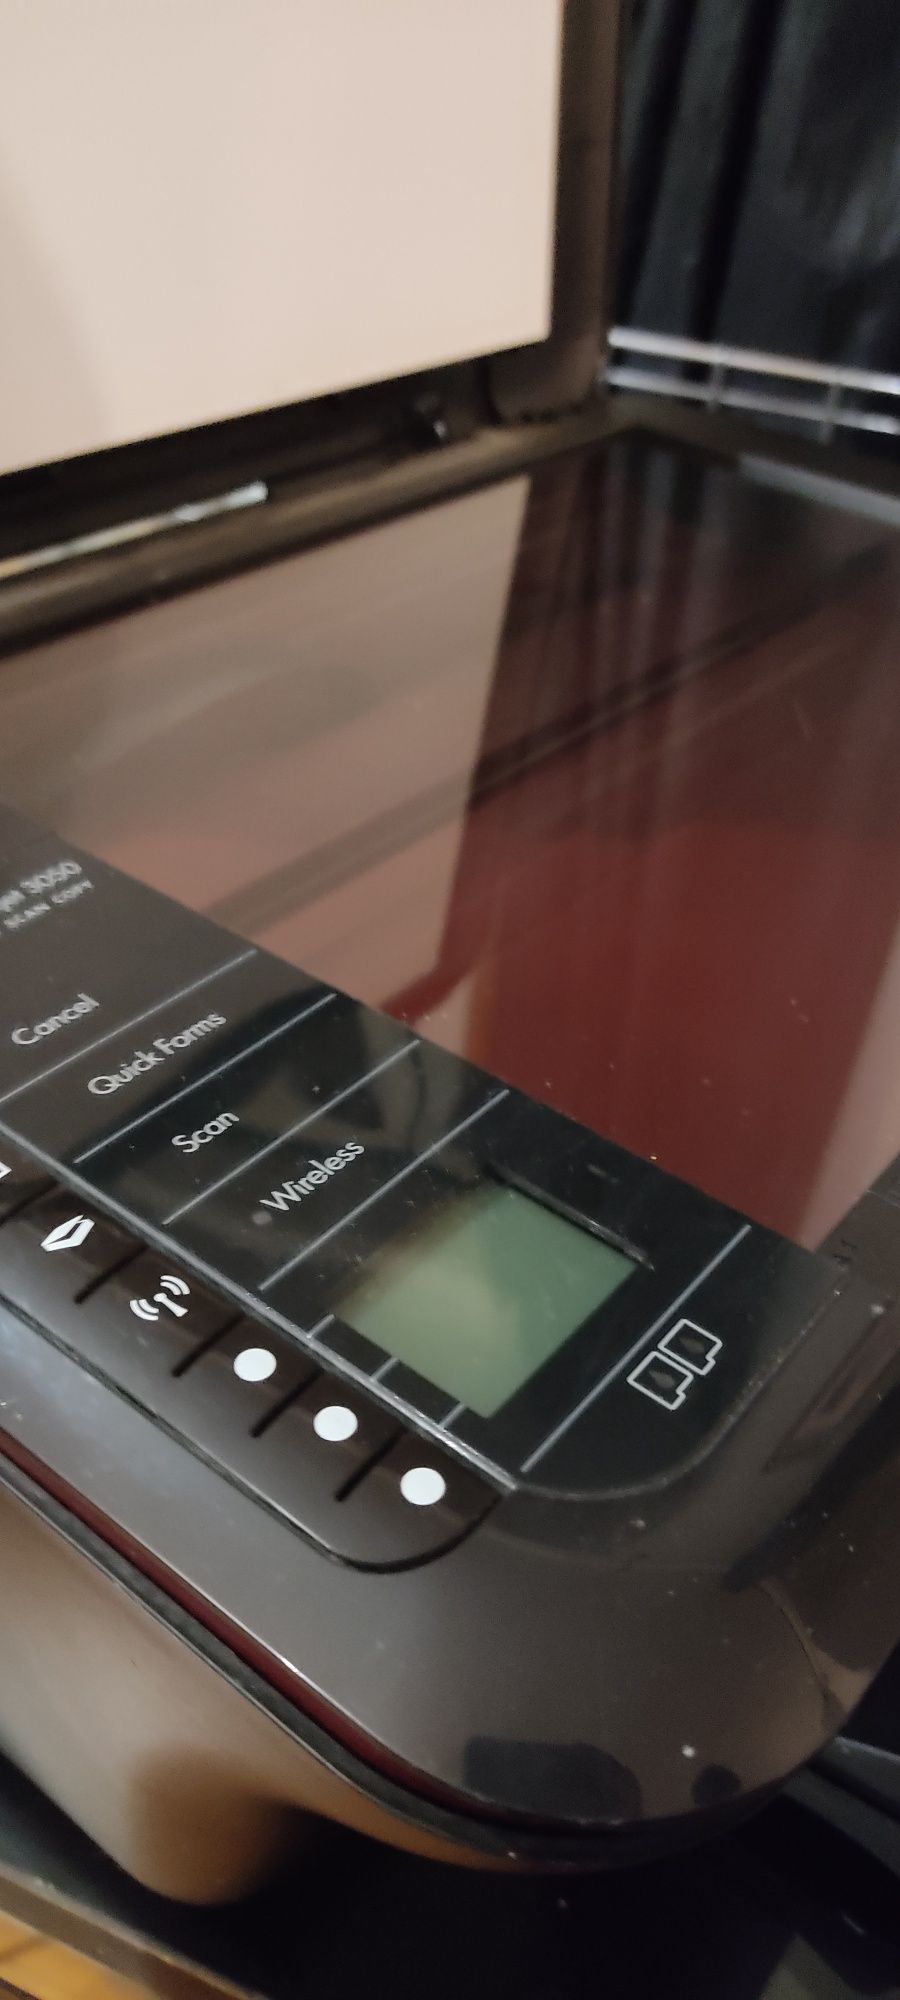 Impressora HP deskjet 3050